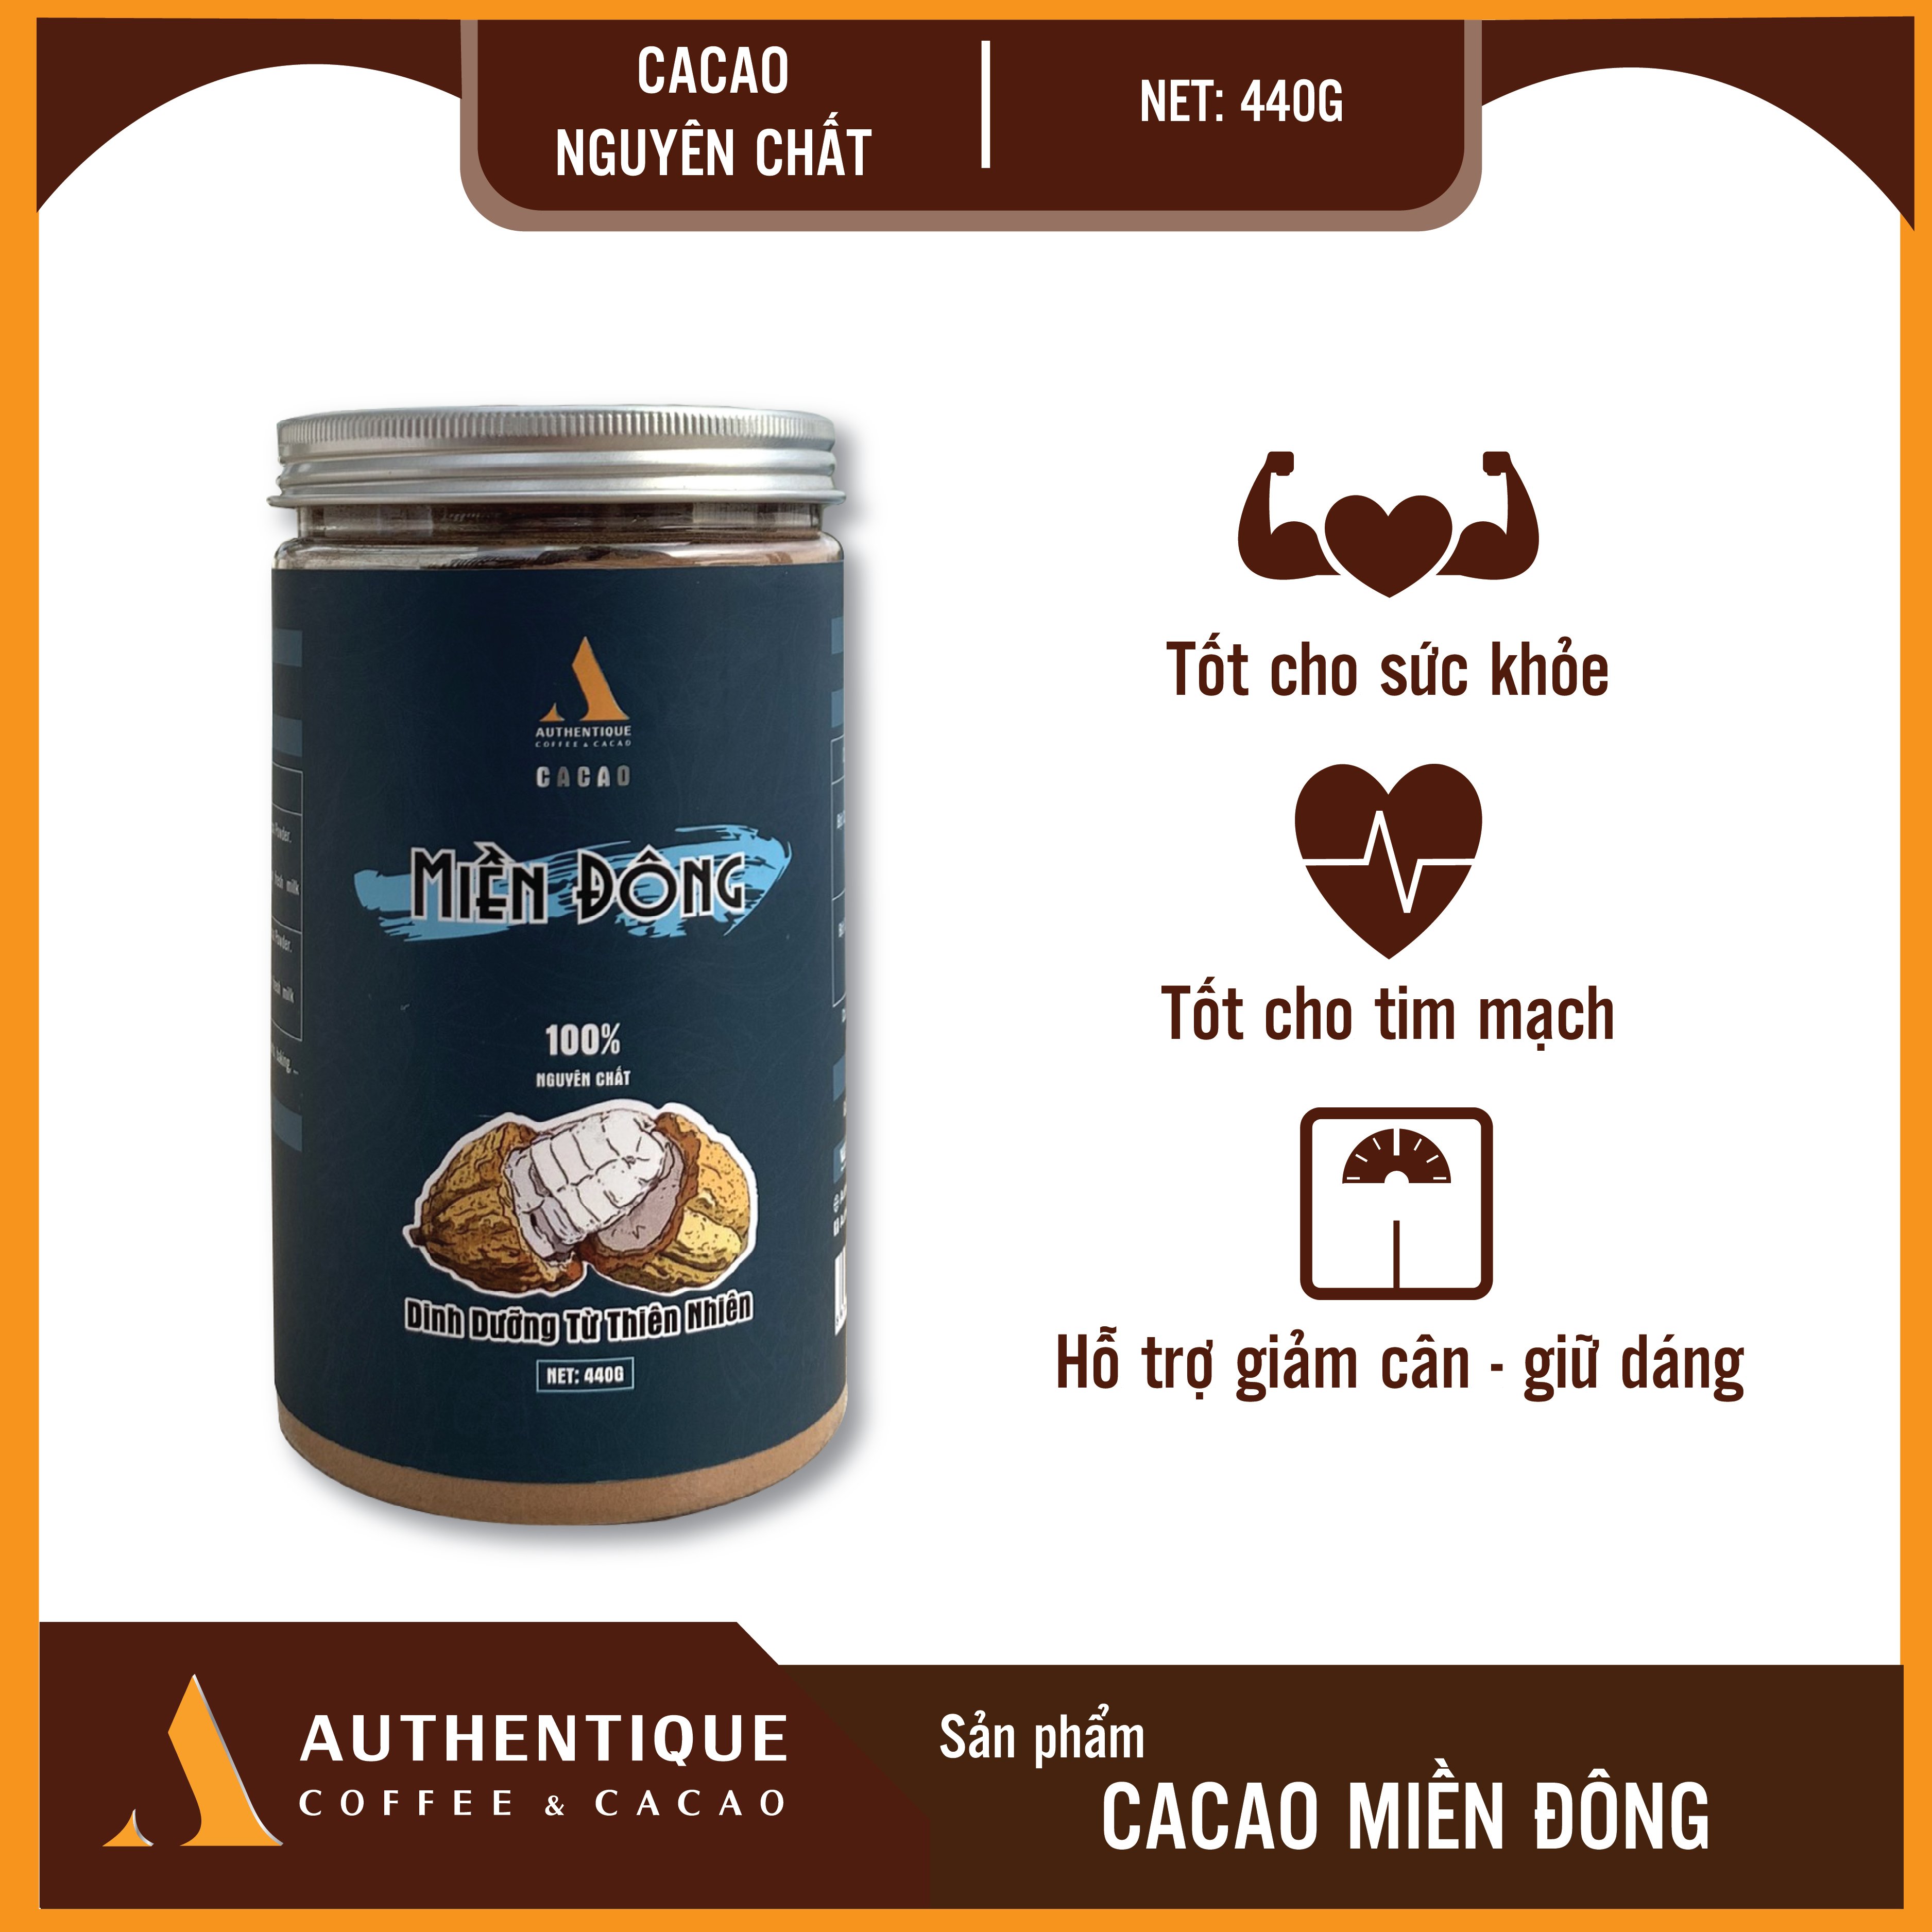 Cacao Nguyên chất Miền Đông - Thơm ngon, Đậm vị - Authentique Cacao